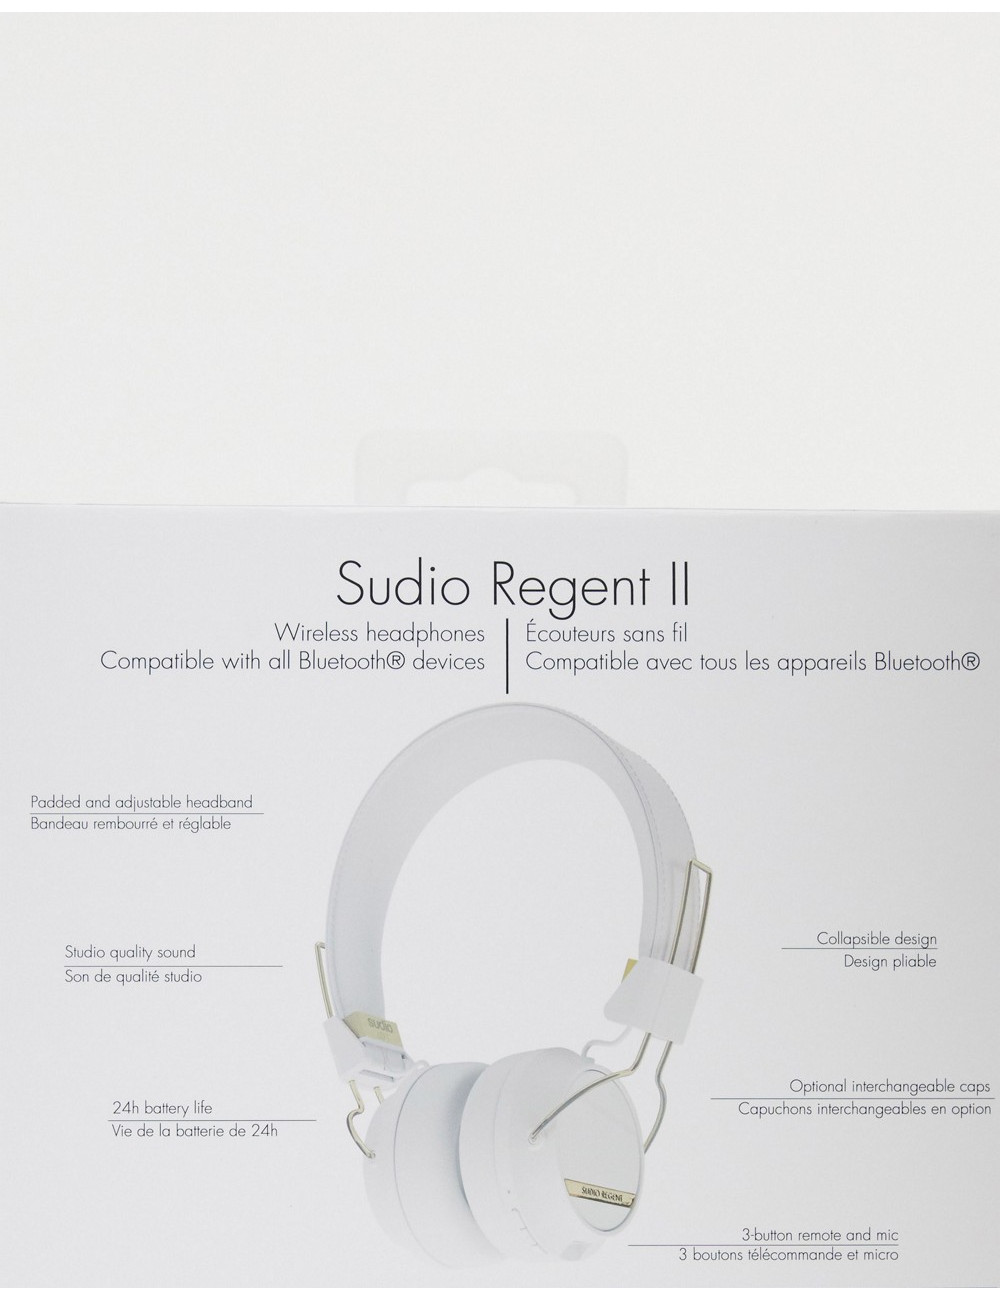 Sudio Regent II wireless...